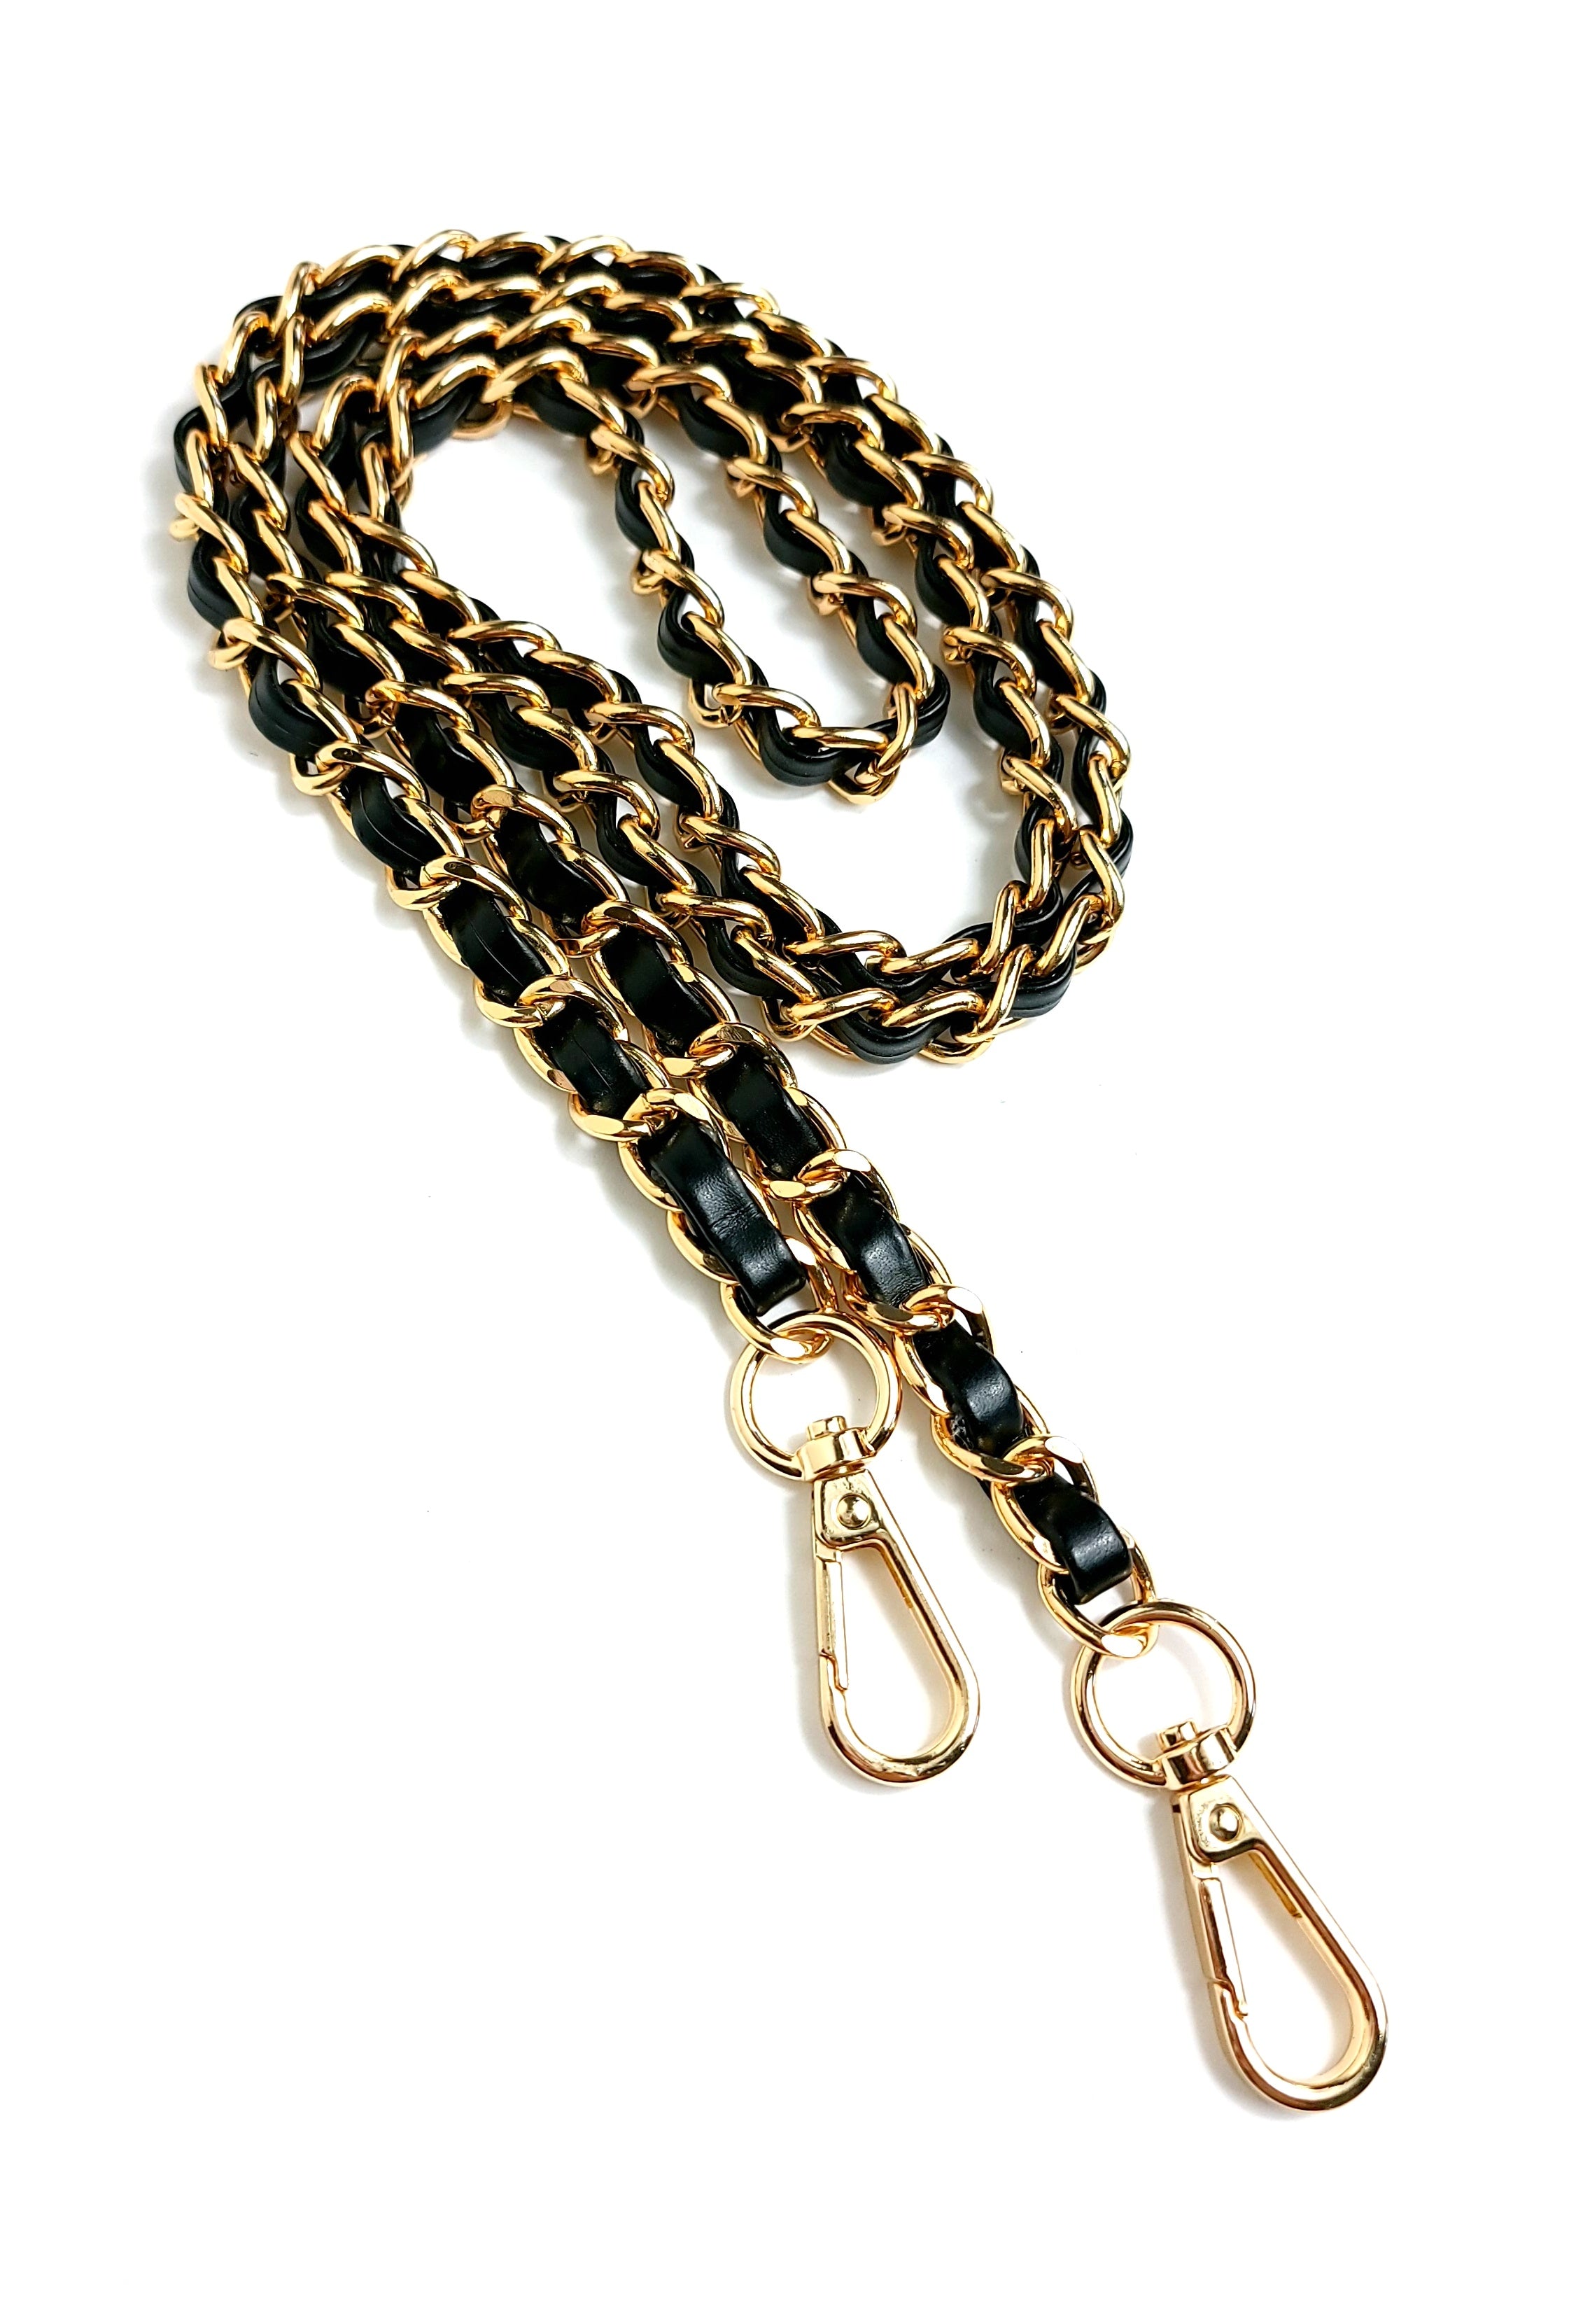 Gold metal strap for Crossbody Handbag